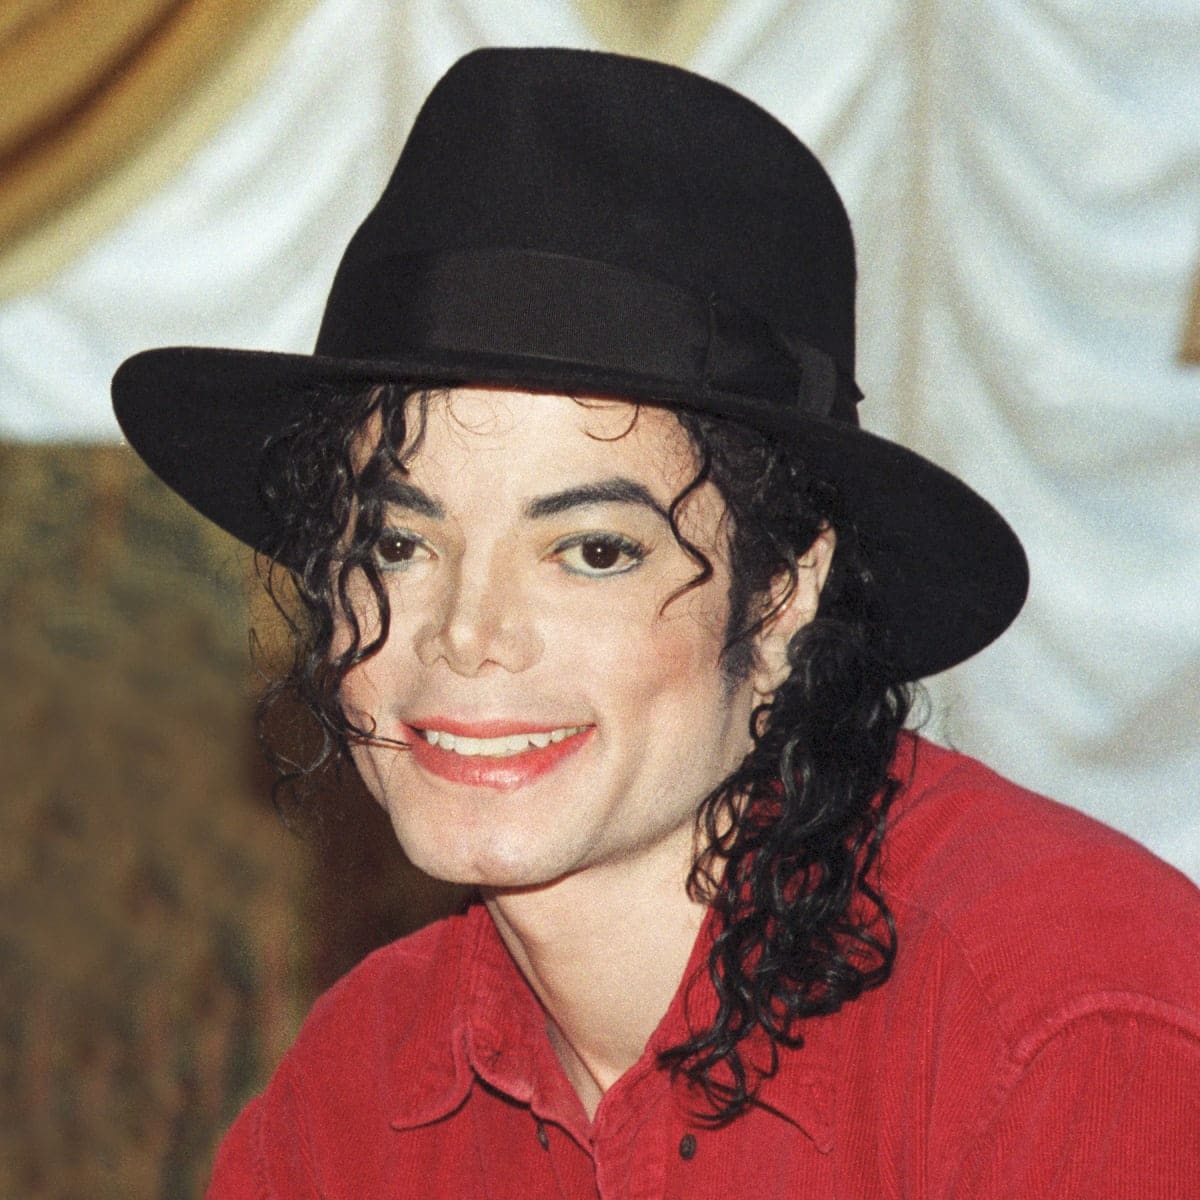 A pop királya, Michael Jackson